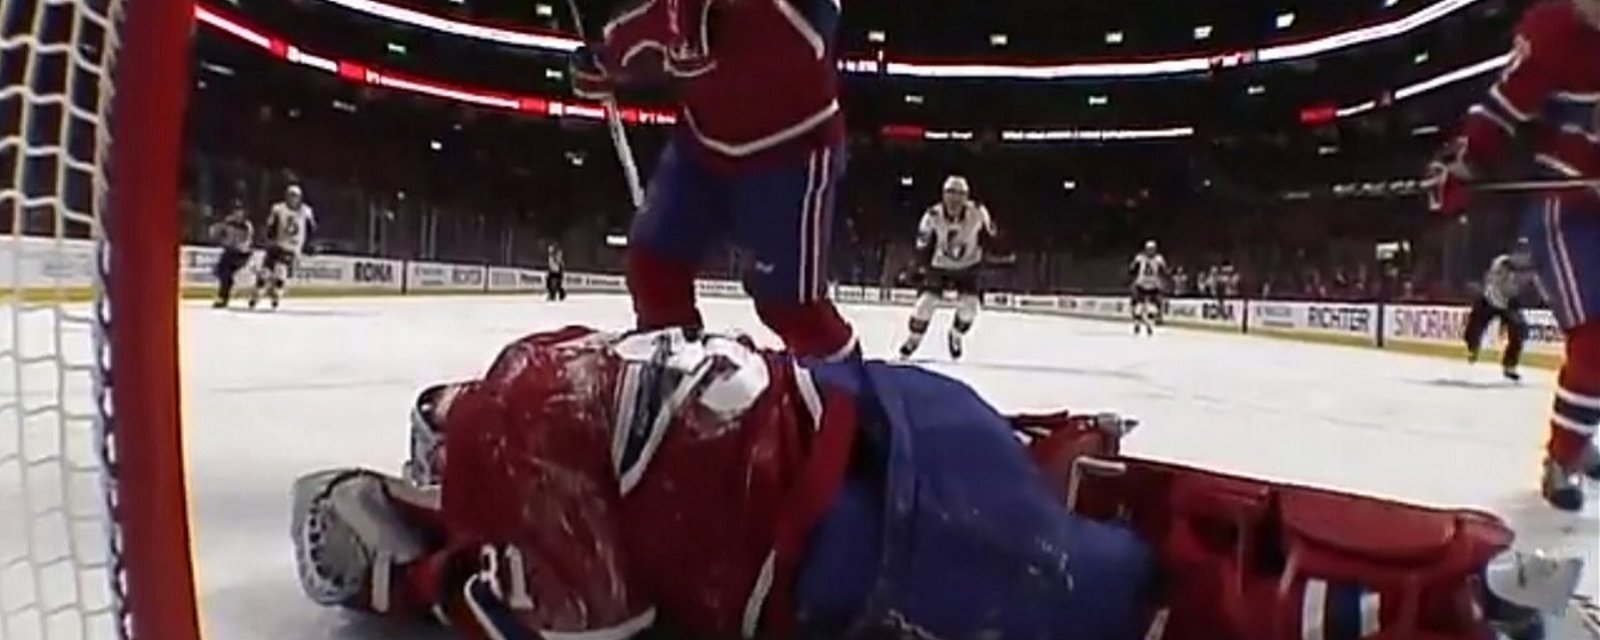 Scène extrêmement inquiétante lors du match Canadiens - Senators